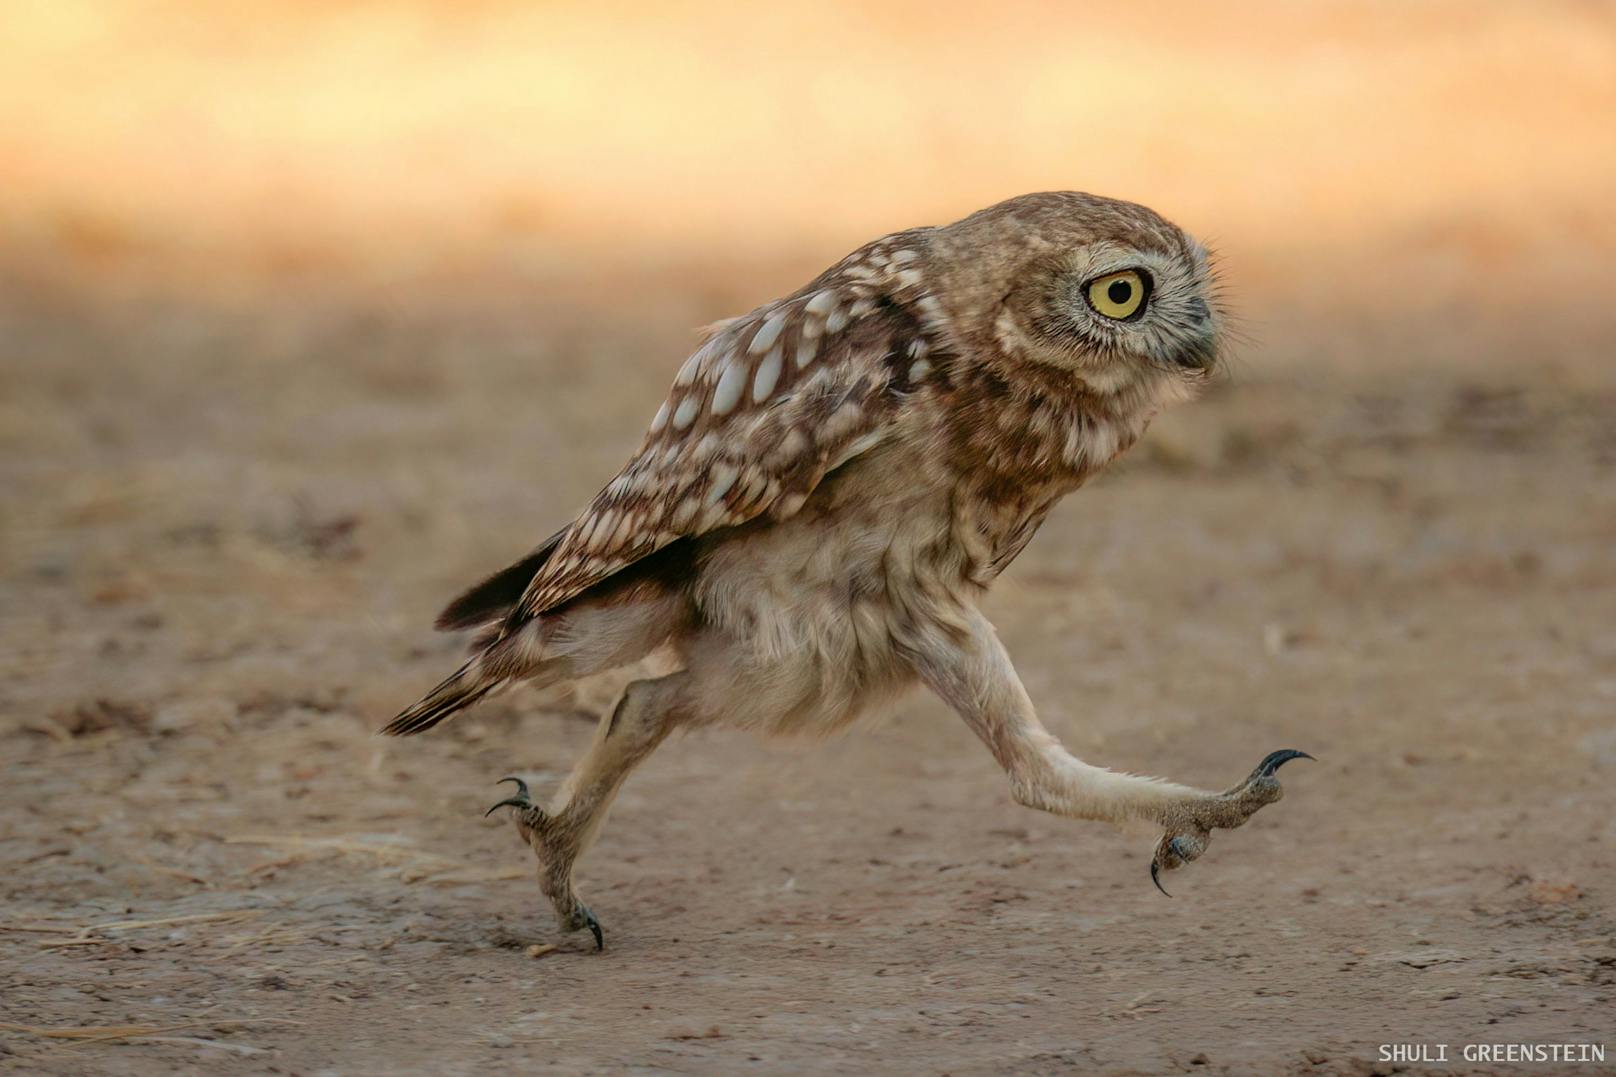 "Rushing Little owl fledgeling"